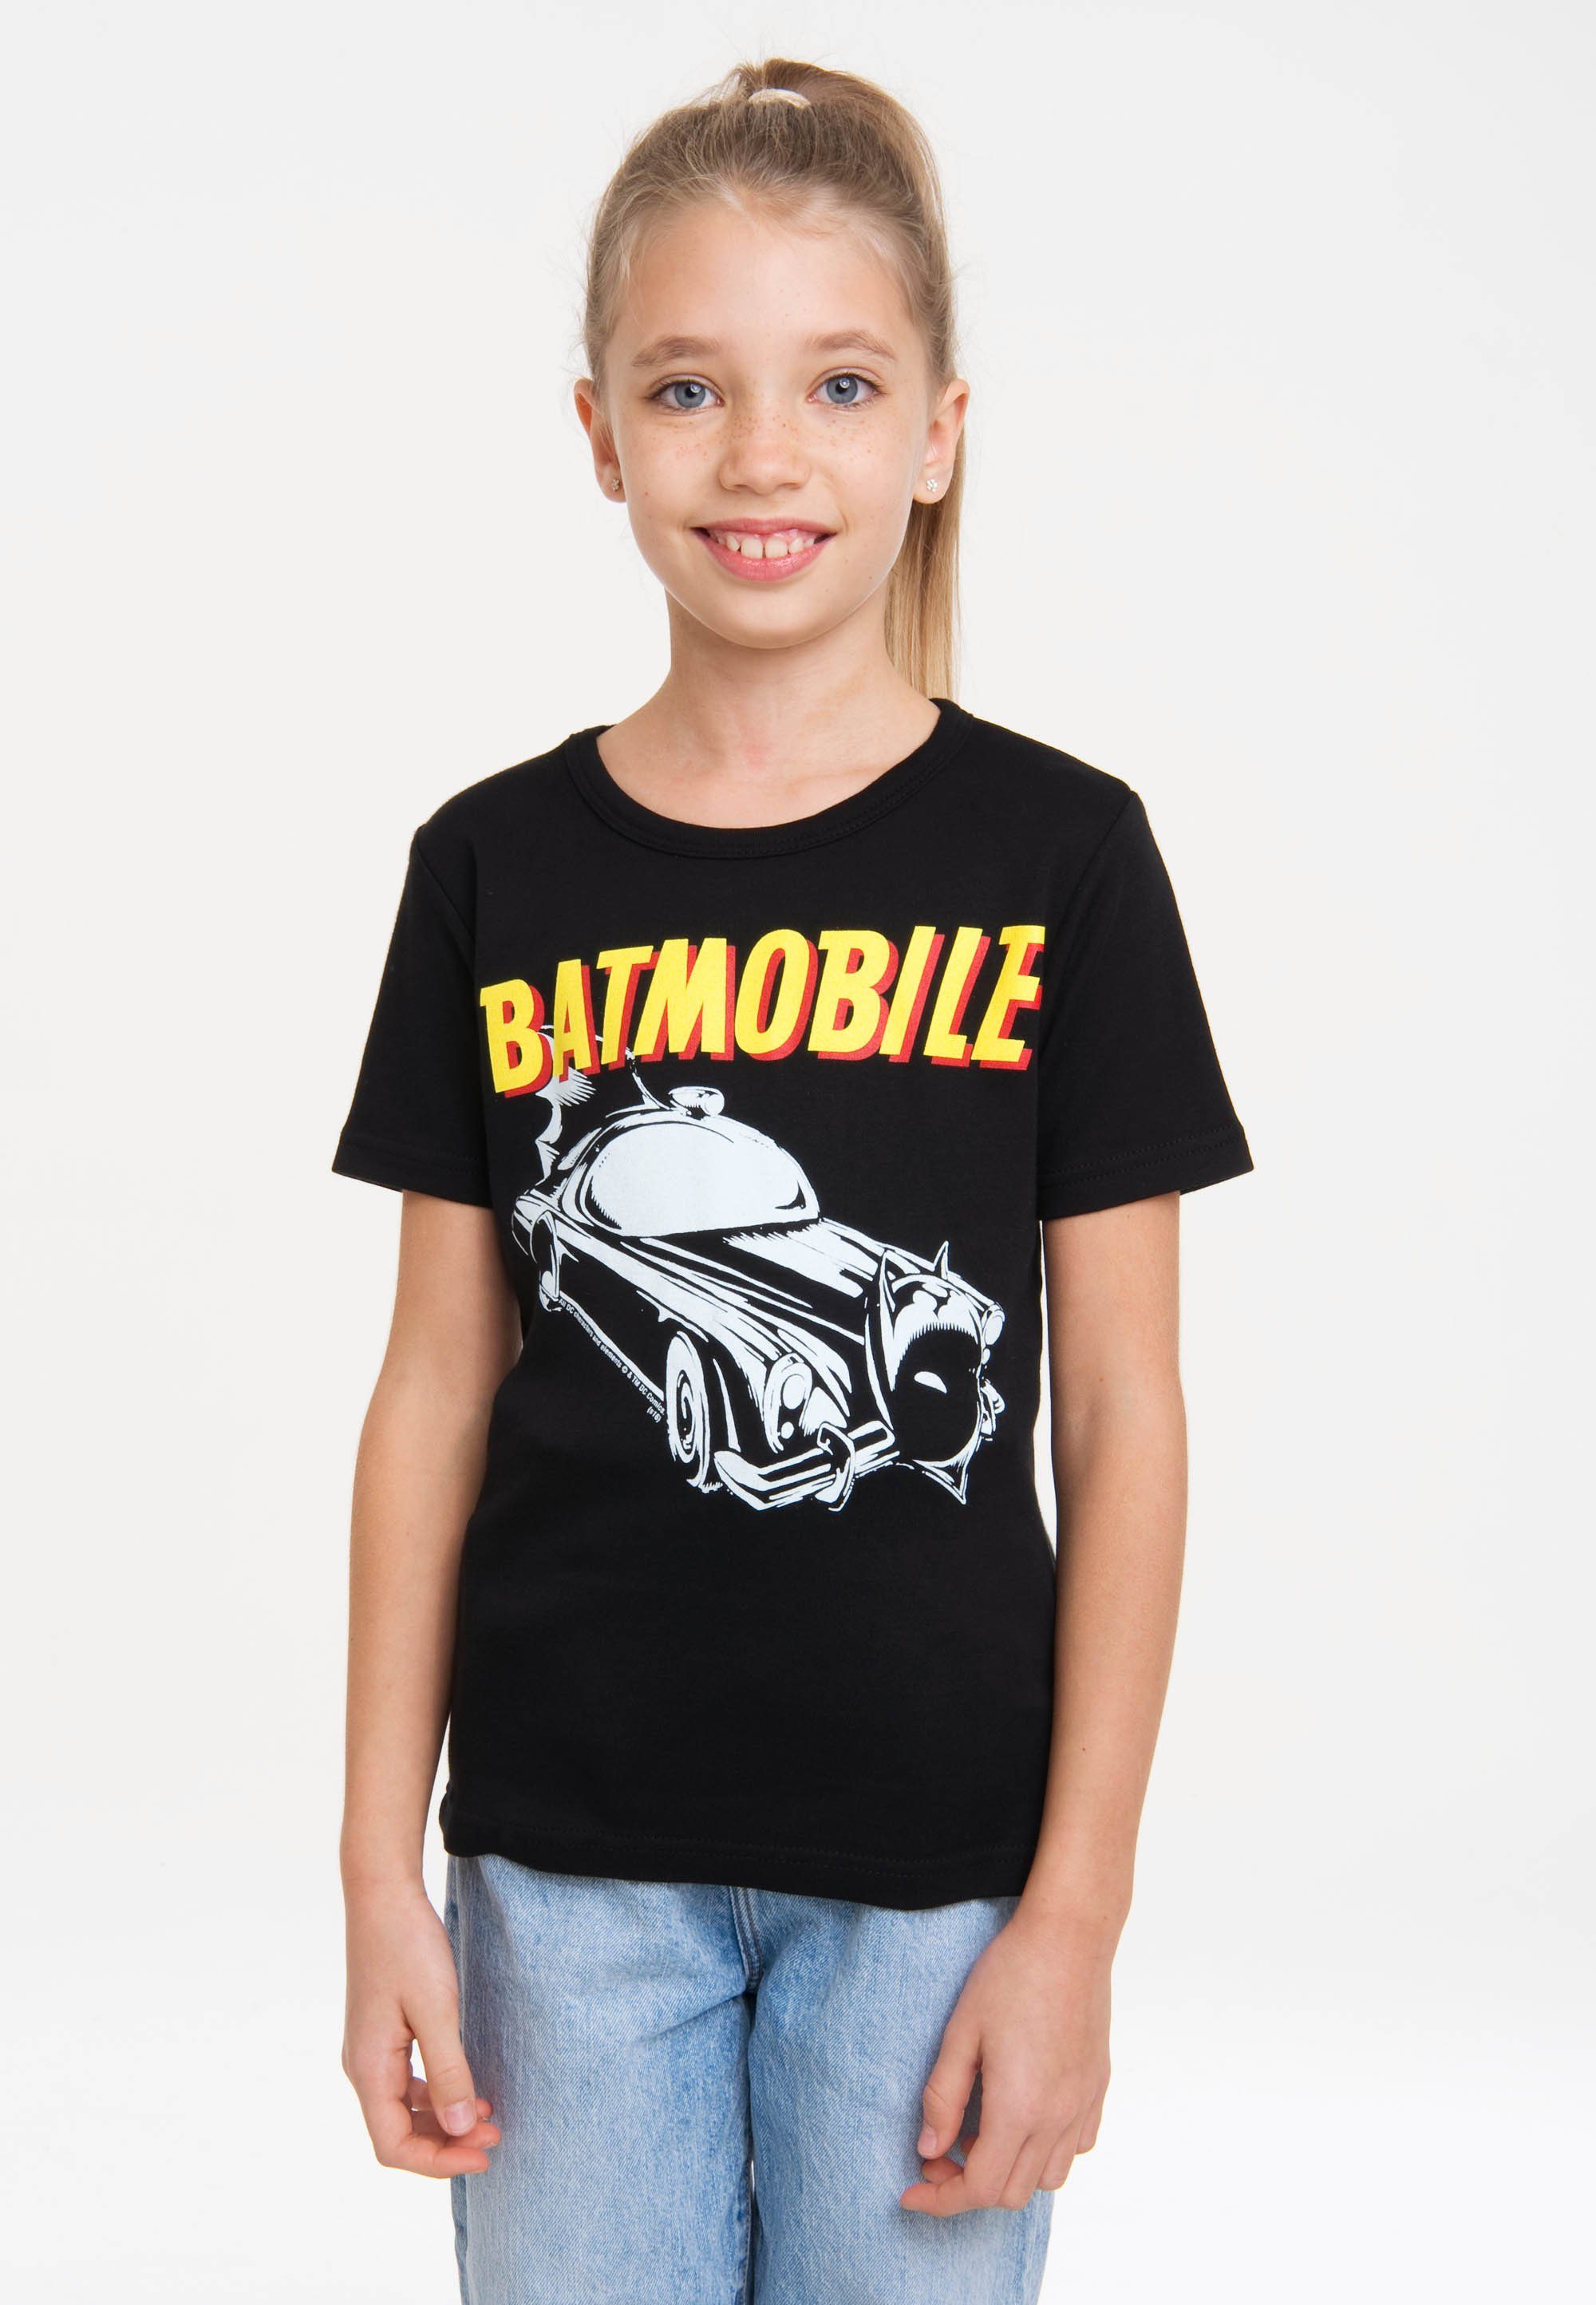 LOGOSHIRT T-Shirt Batman - Batmobile mit coolem Frontprint